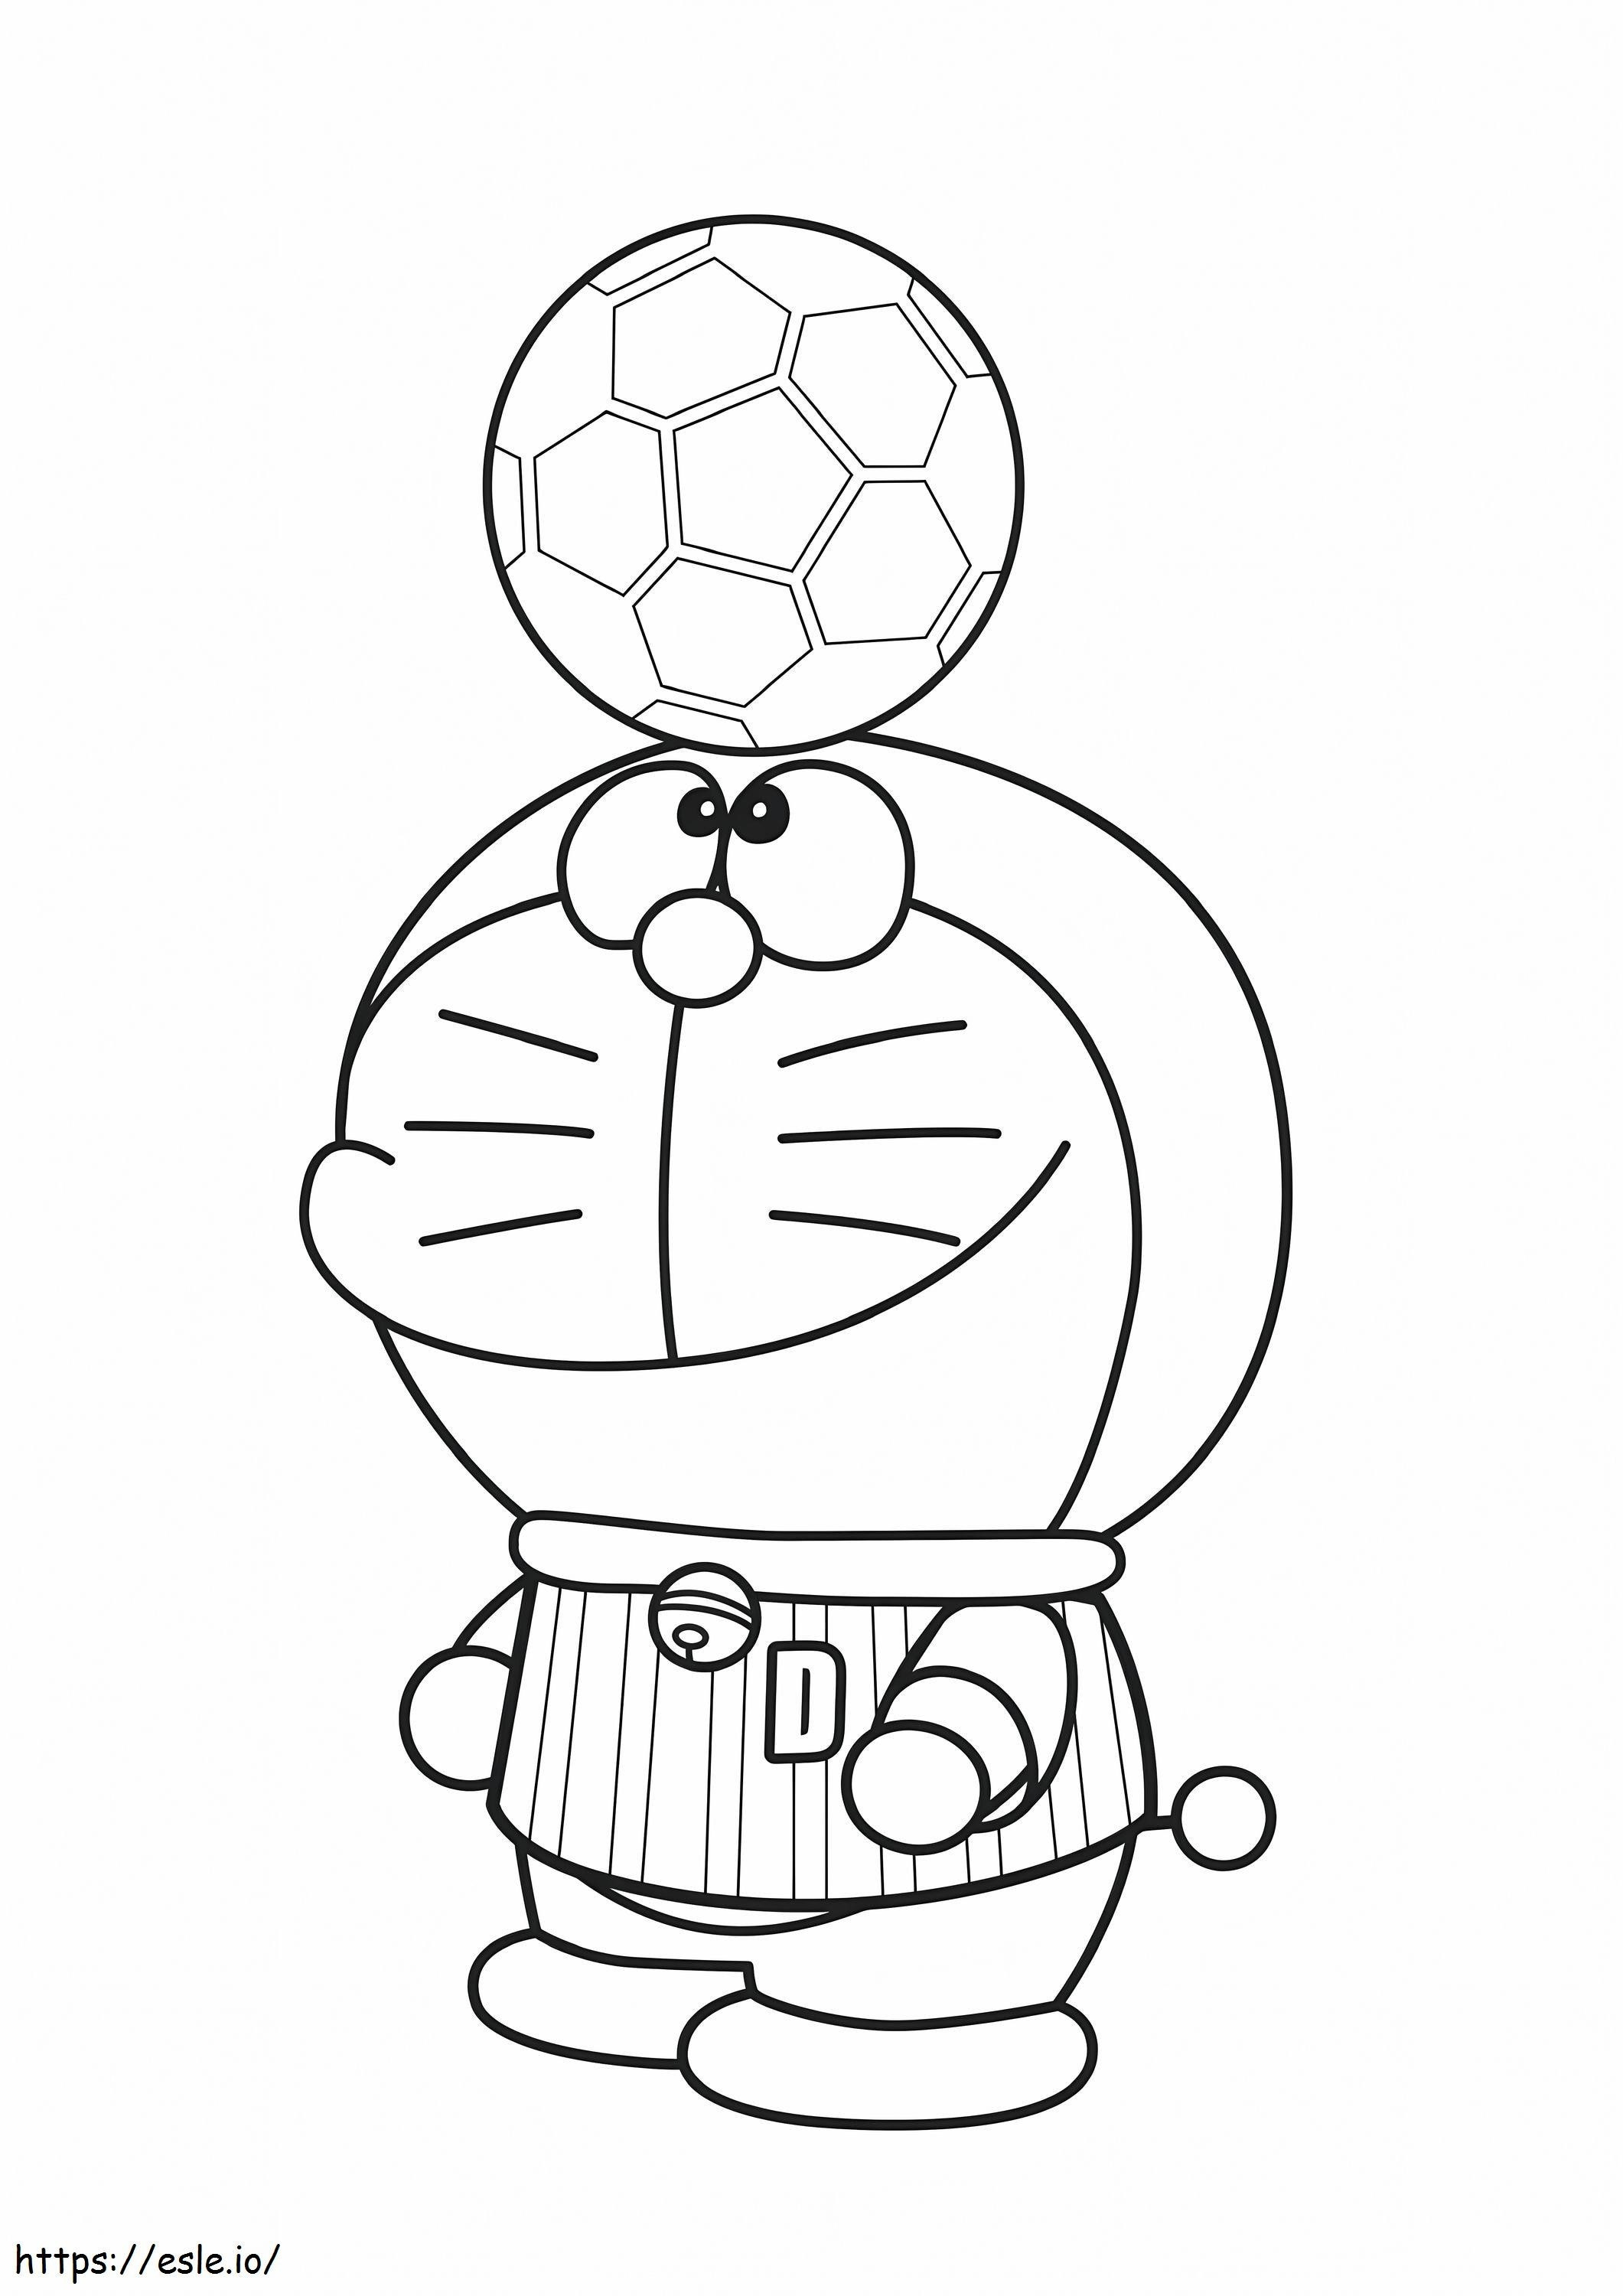  Gratis Kleurplaten Doraemon Voetballer kleurplaat kleurplaat